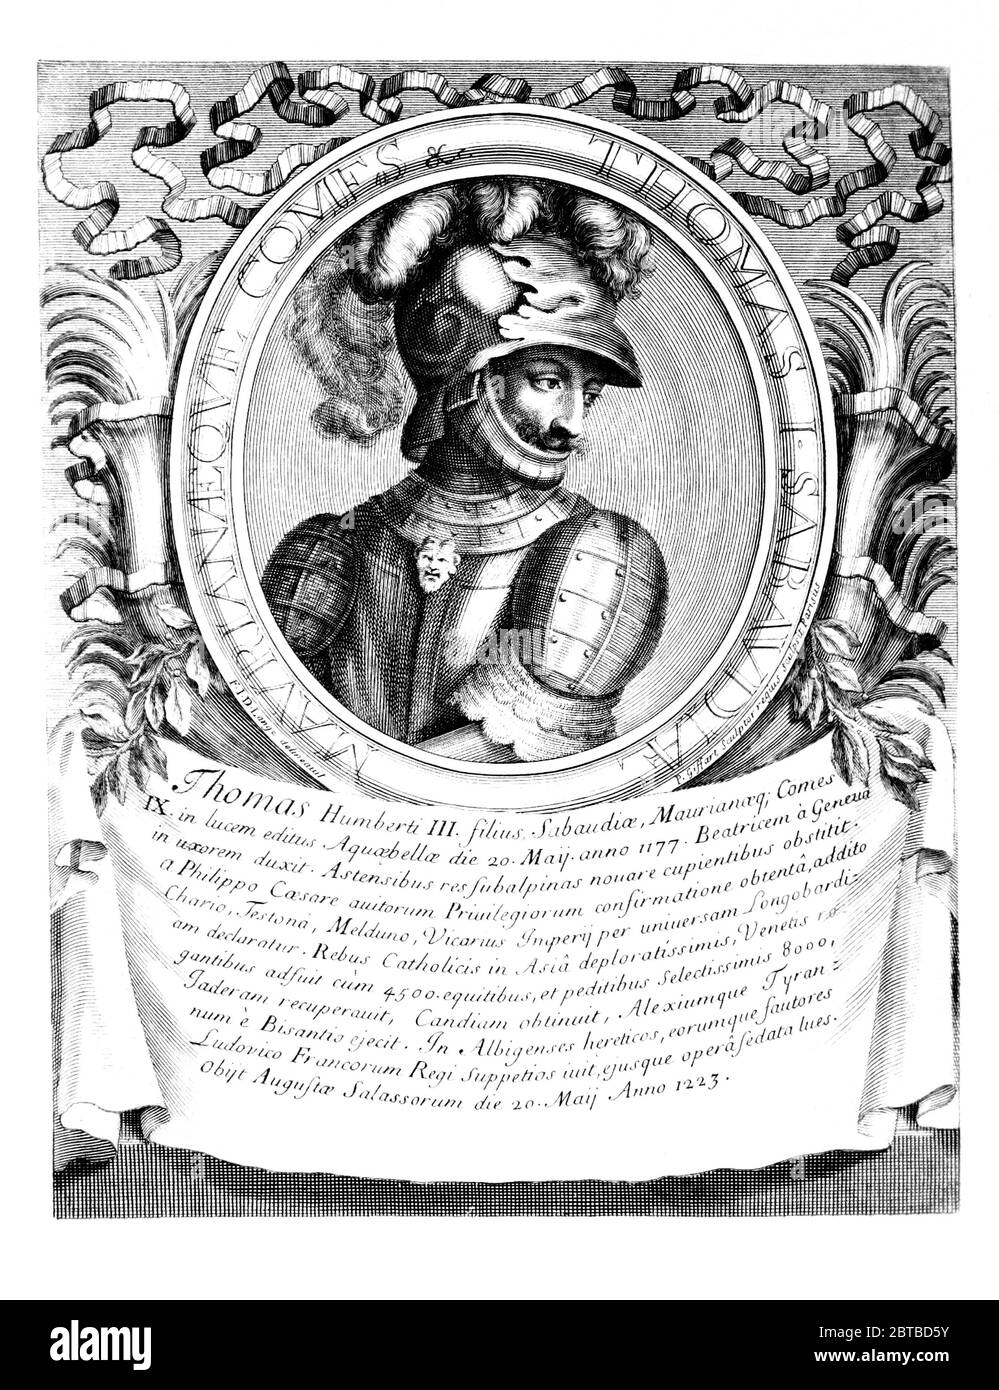 1230 ca, ITALIA: Il Principe italiano TOMMASO i di SAVOIA ( 1178 - 1233 ). Ritratto di D. Lange, inciso da P. Giffart , Parigi , 1702 . - Tommaso i - Duca di Savoia - Duc de SAVOYE - SAVOY - CASA SAVOIA - ITALIA - FRANCIA - REALI - Nobiltà italiana - SAVOY - NOBILTÀ - REGALITÀ - STORIA - FOTO STORICHE ---- Archivio GBB Foto Stock